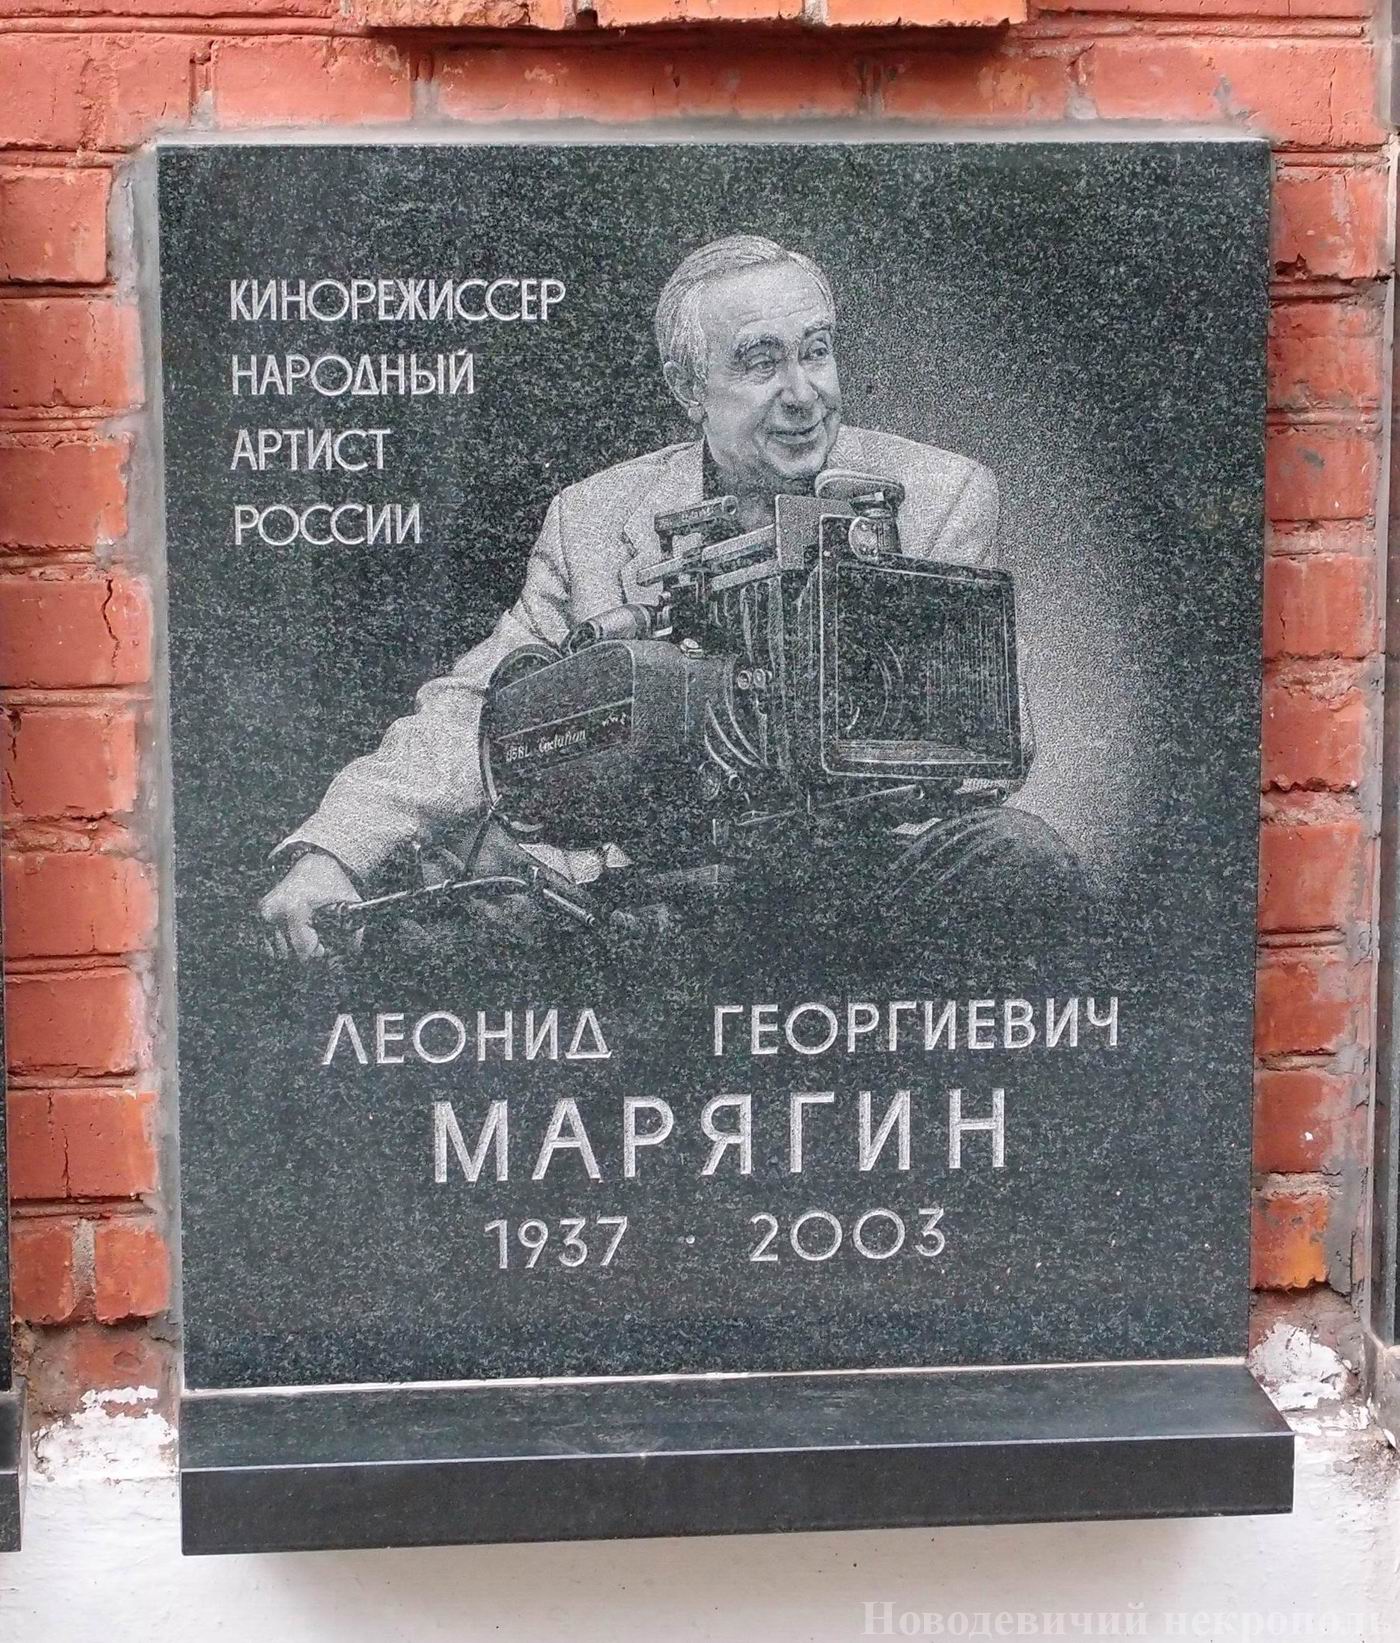 Плита на нише Марягина Л.Г. (1937-2003), на Новодевичьем кладбище (колумбарий [149]-5-3).